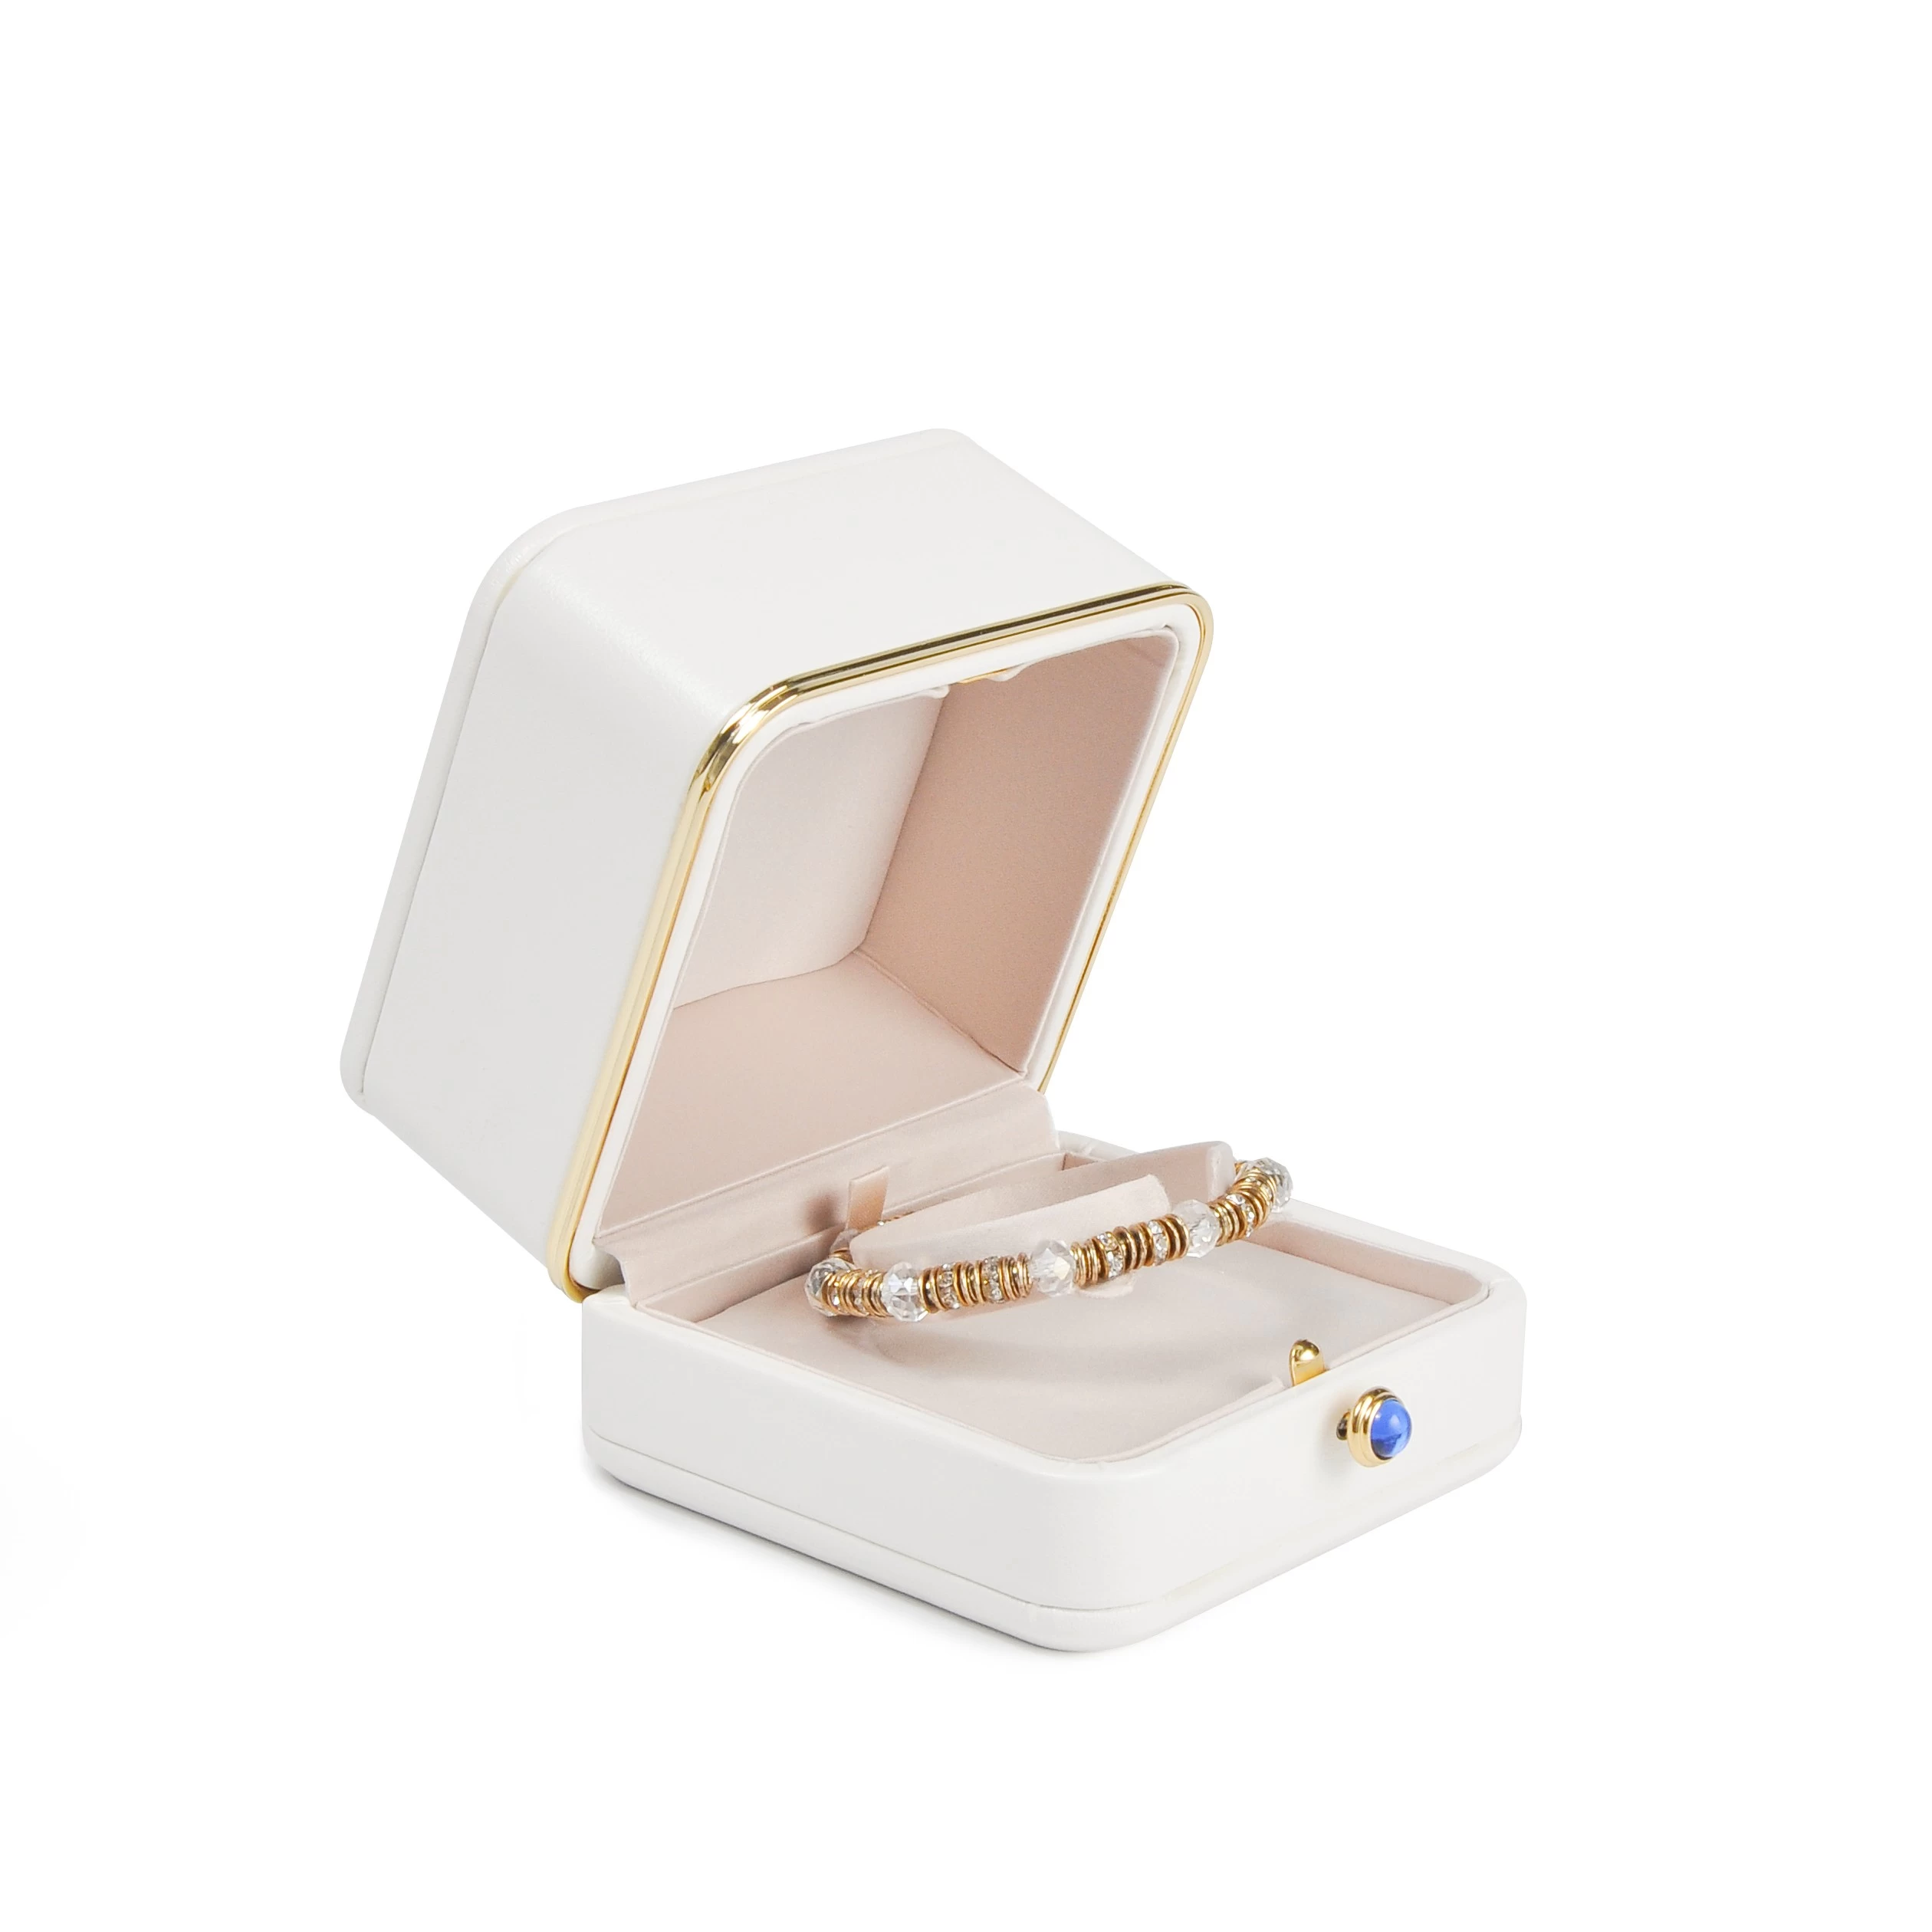 White high end plastic velvet inner Golden edge Metal plate Jewelry Packaging box